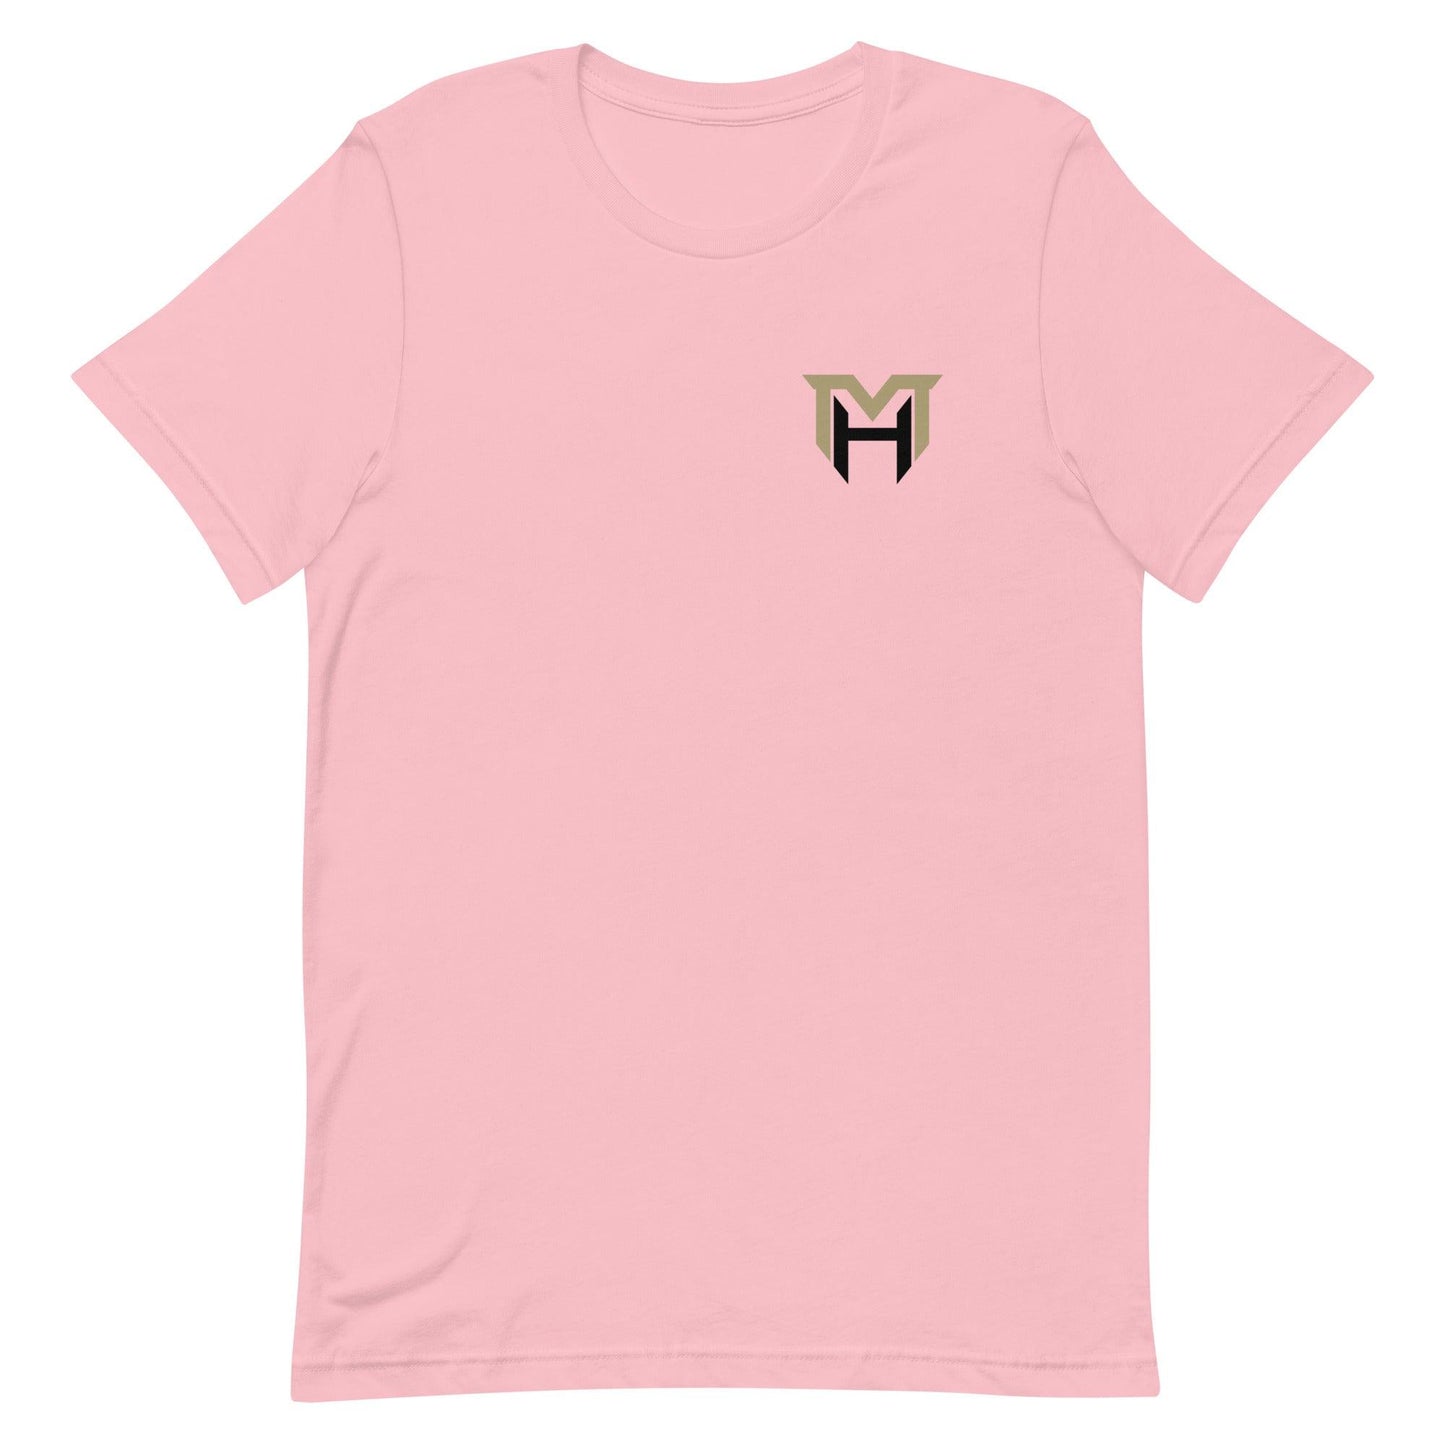 Martel Hight "Essential" t-shirt - Fan Arch